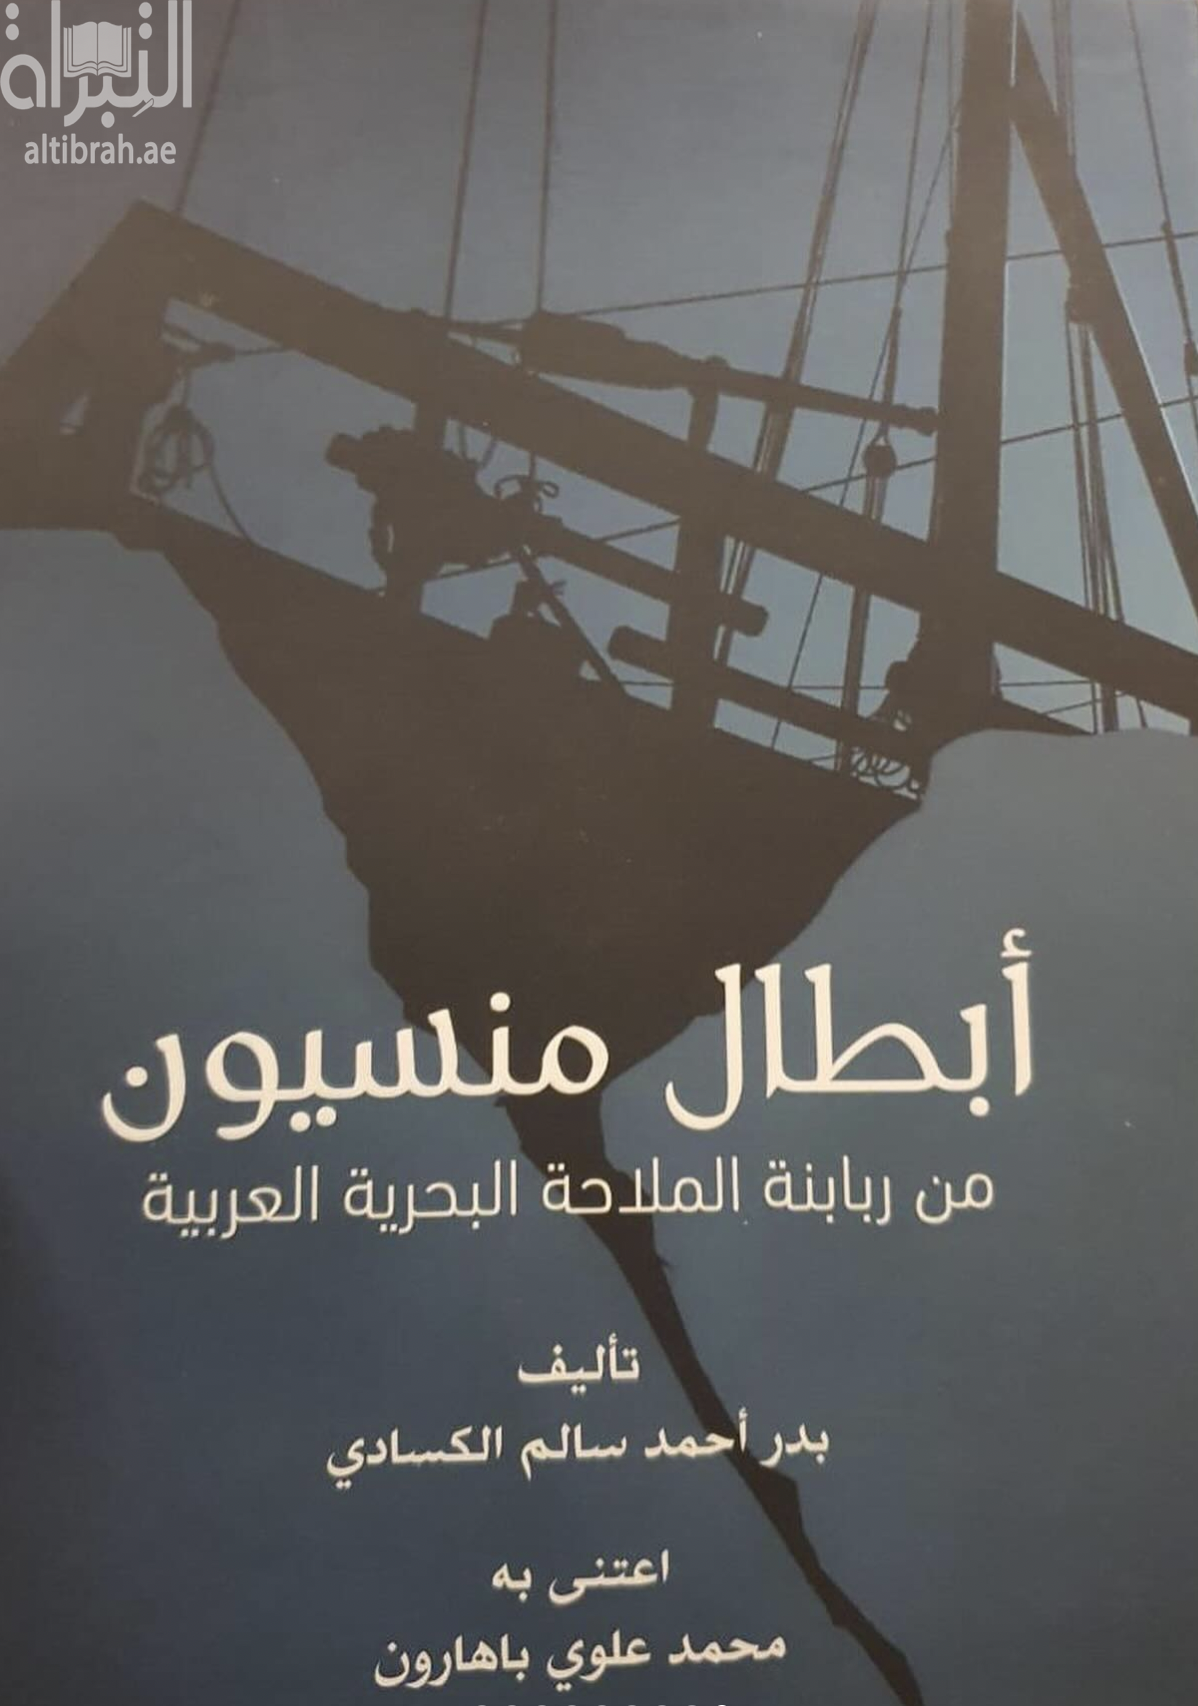 كتاب أبطال منسيون من ربابنة الملاحة البحرية العربية